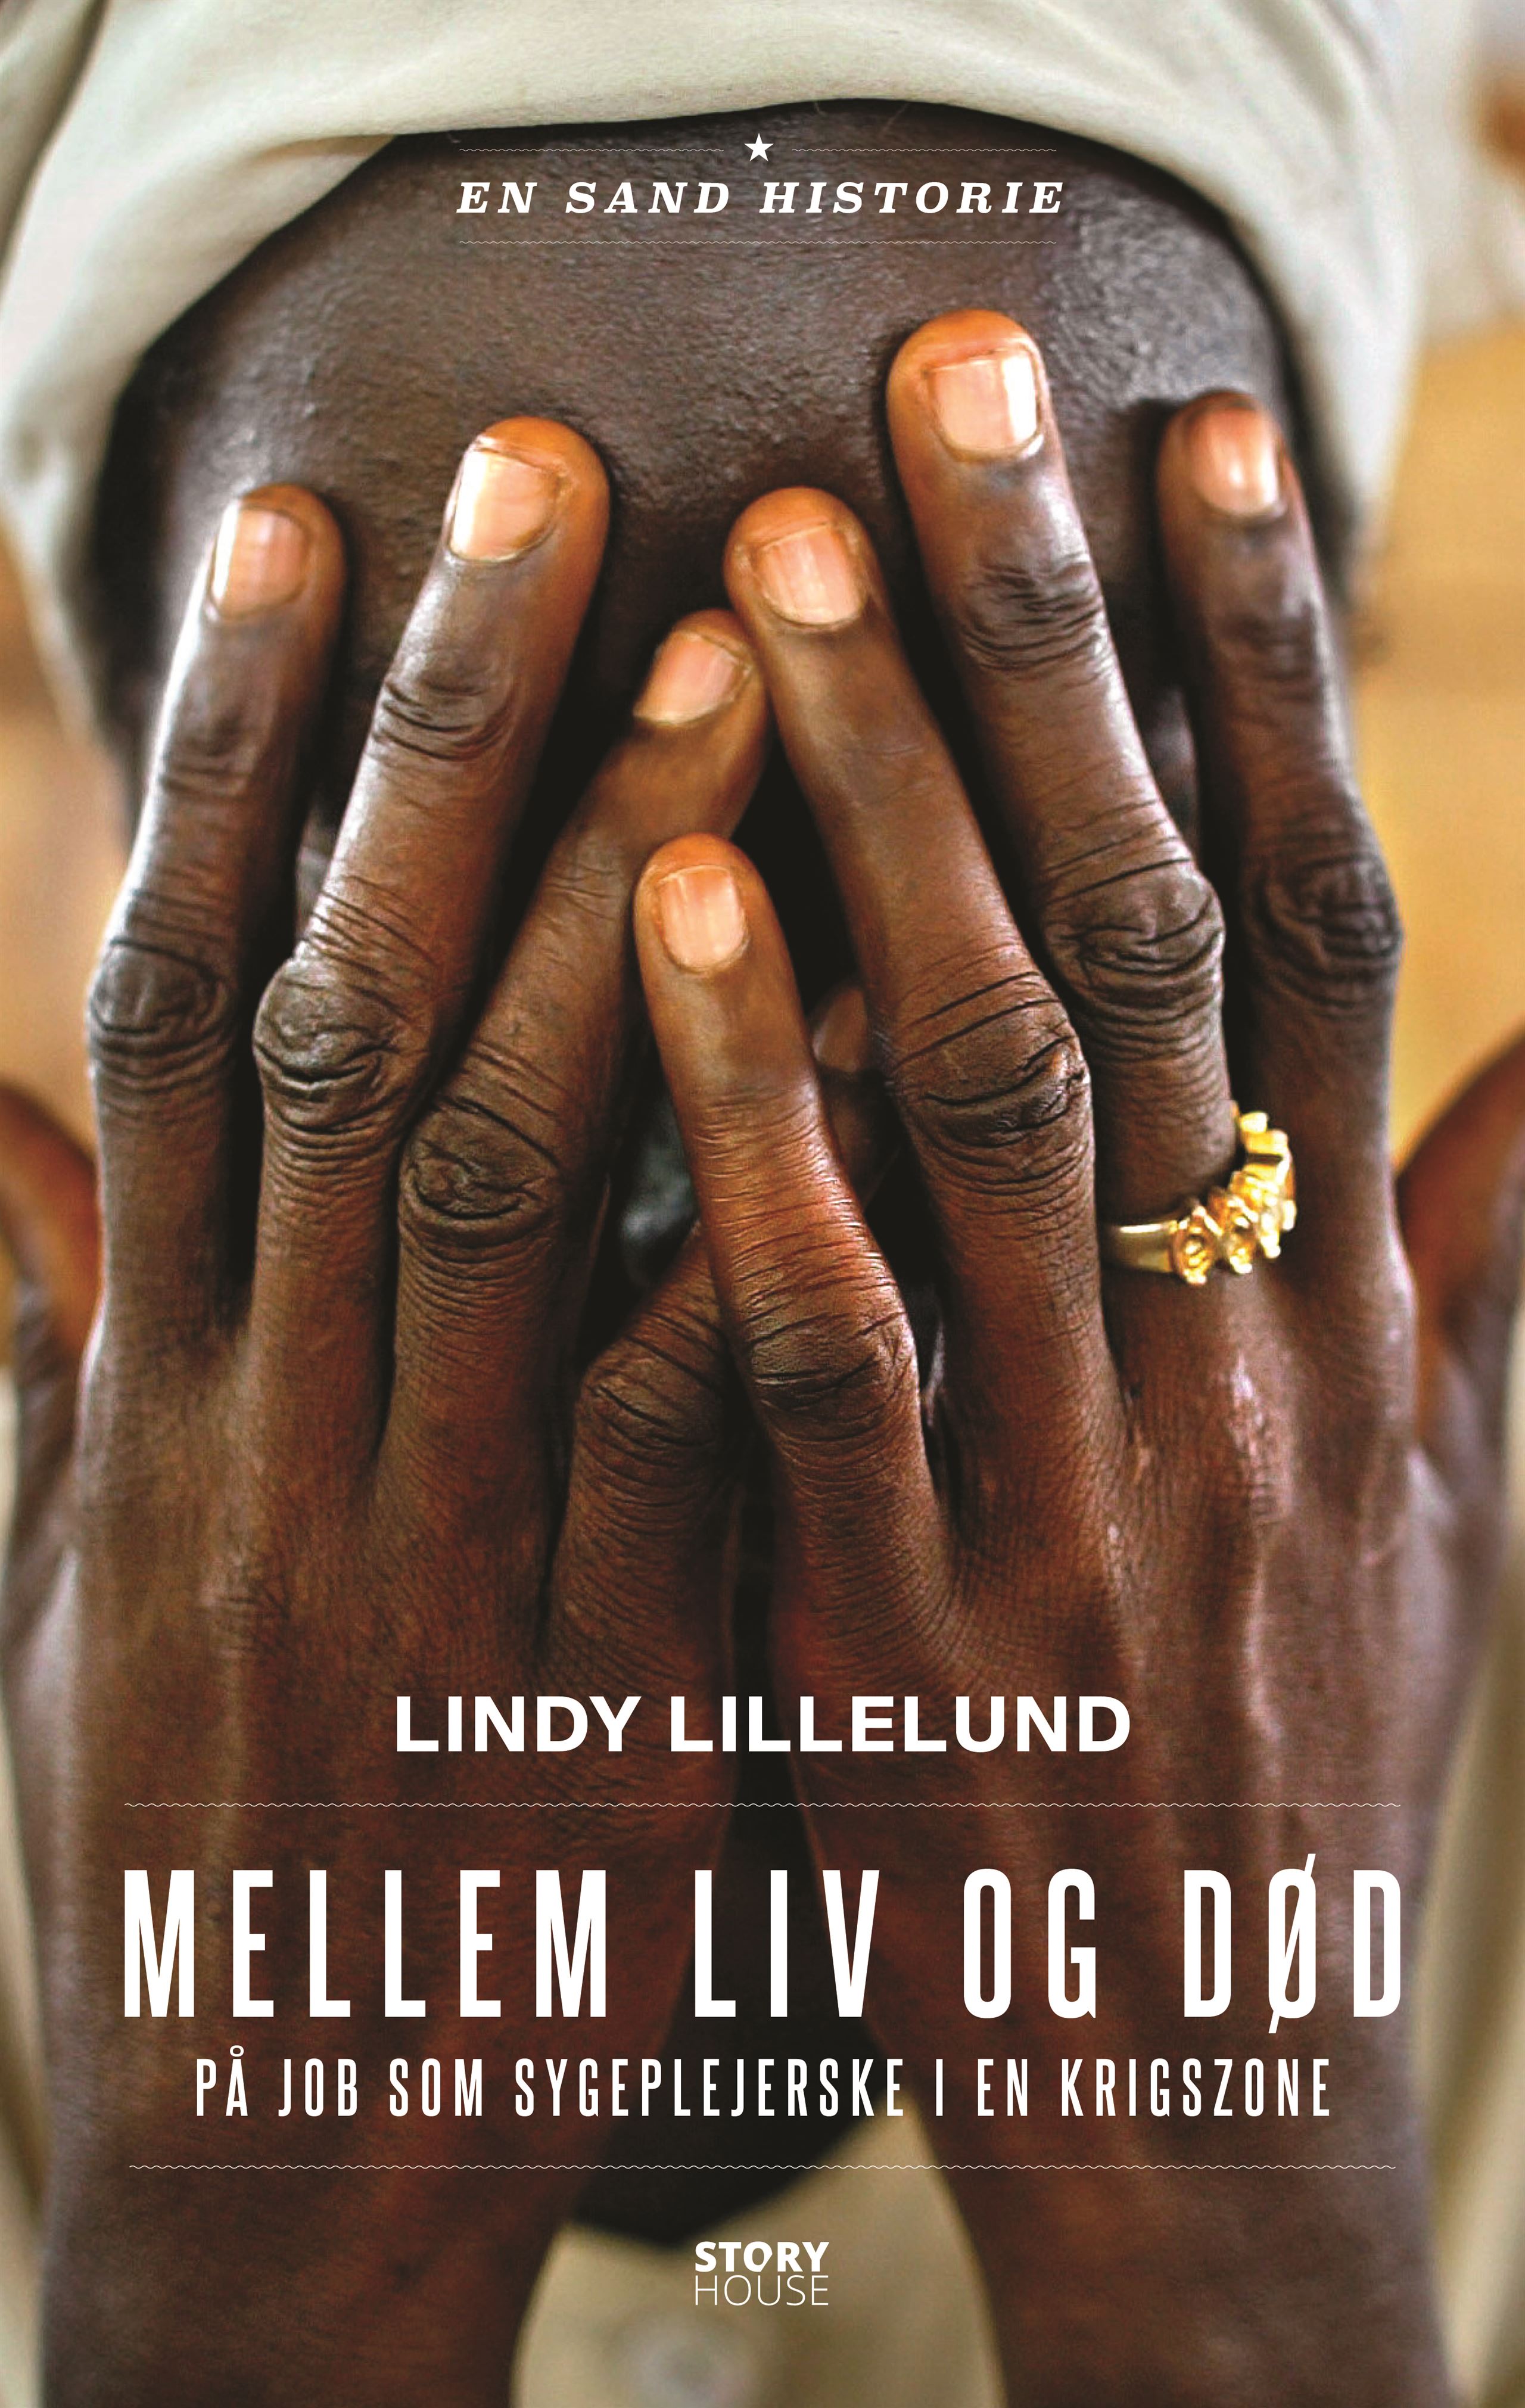 Lindy Lillelund, Mellem liv og død, sygeplejerske i en krigszone